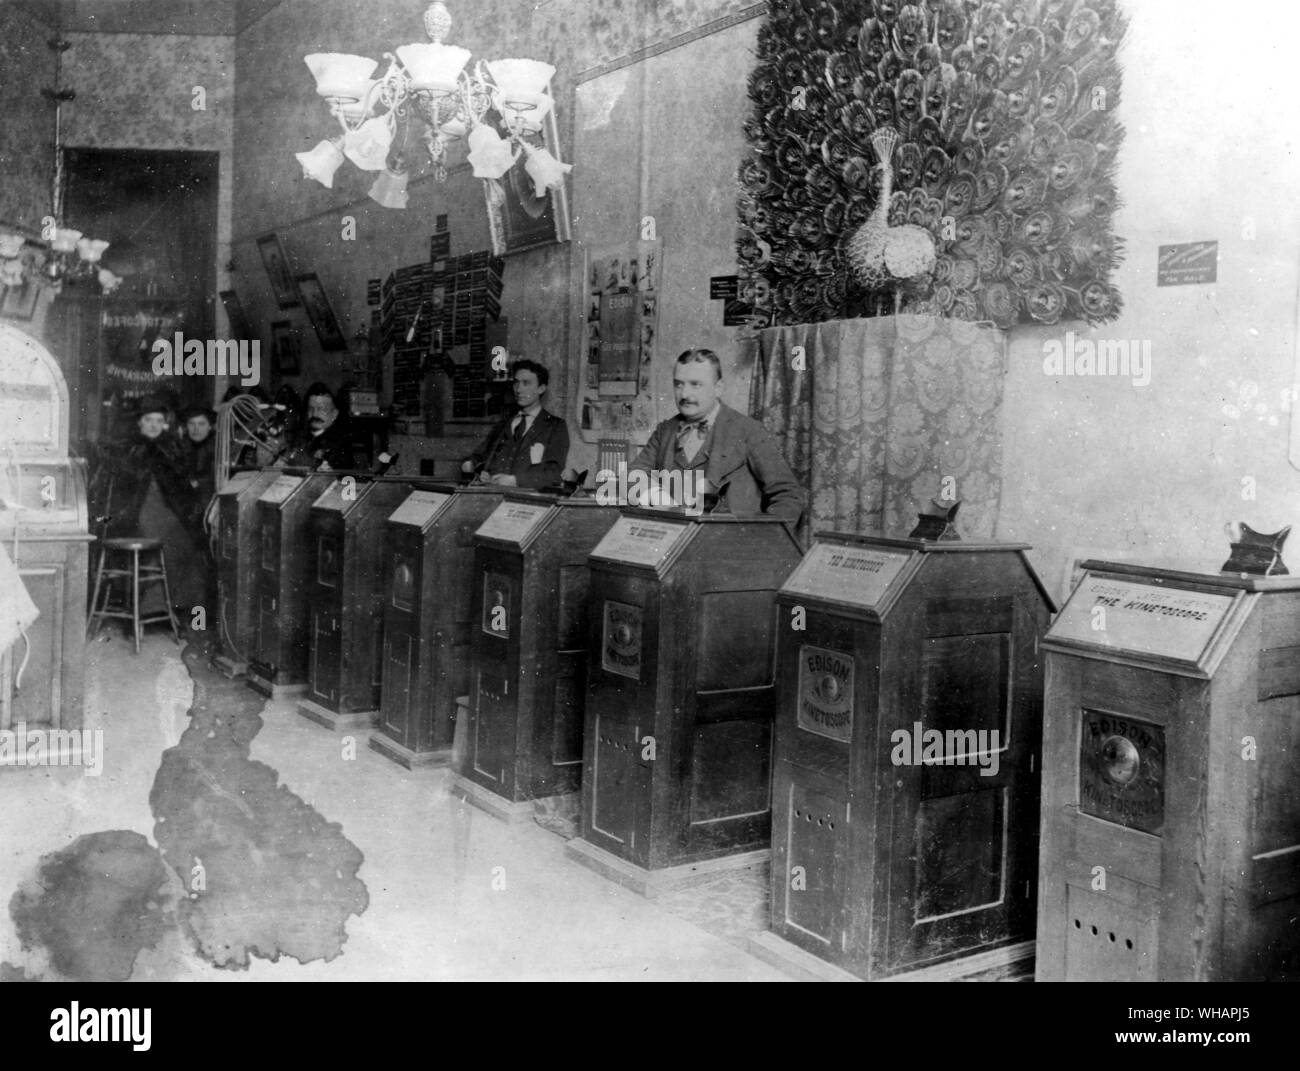 Kinétoscope Arcade. Peter Bacigalupi ( photographe ? ). San Francisco en Californie. 1894. Le 31 août 1897, Thomas Edison a reçu un brevet pour le kinétoscope, précurseur de la motion-photo projecteur de film. Banque D'Images